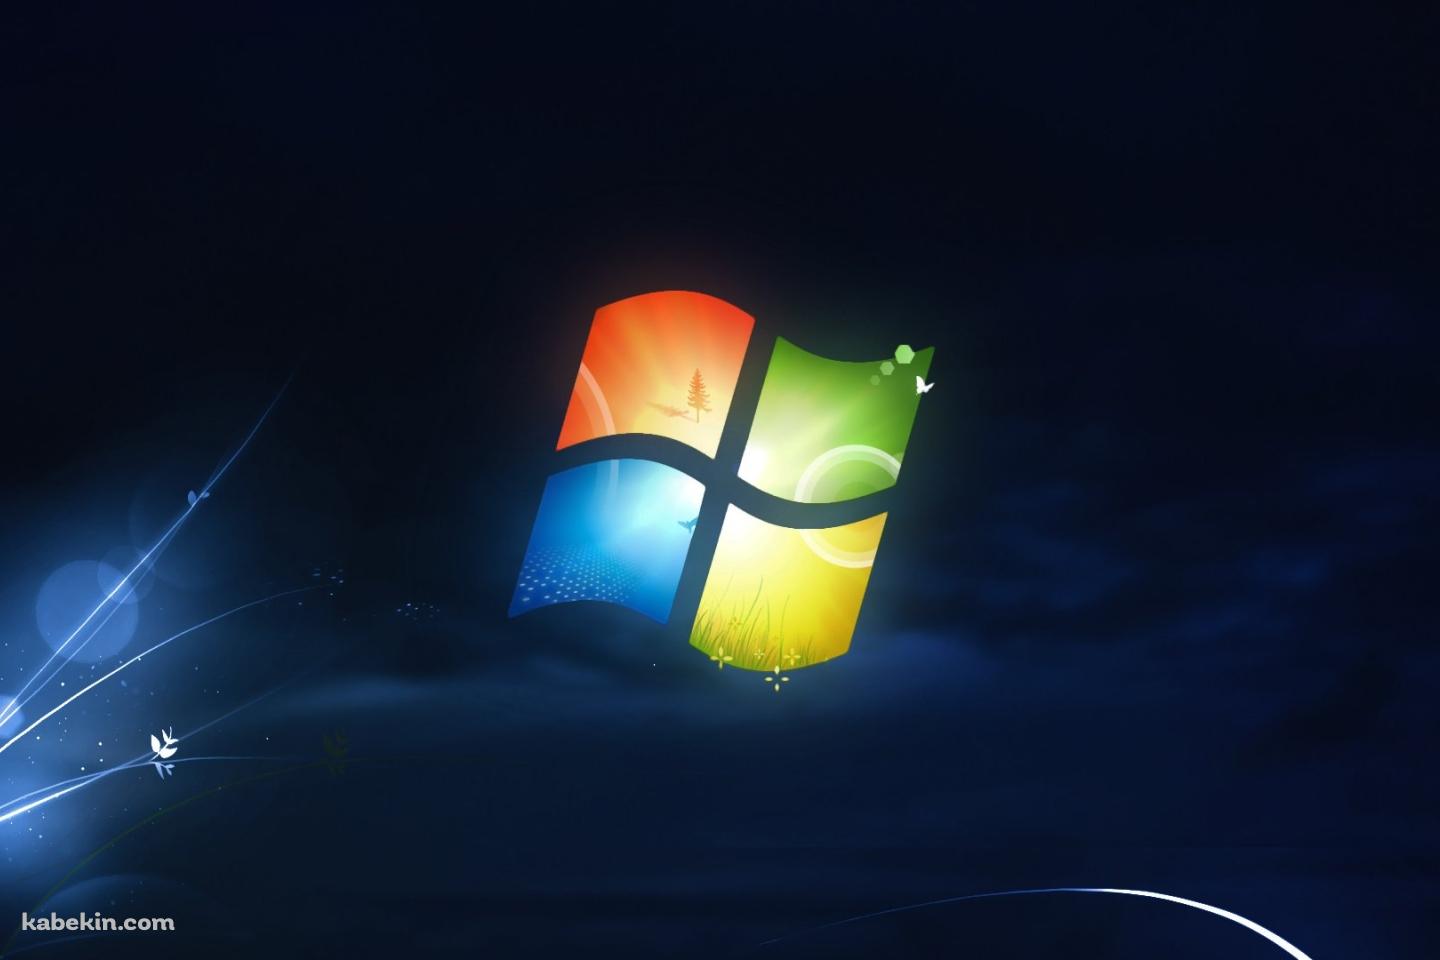 ダークブルー Windowsロゴの壁紙(1440px x 960px) 高画質 PC・デスクトップ用